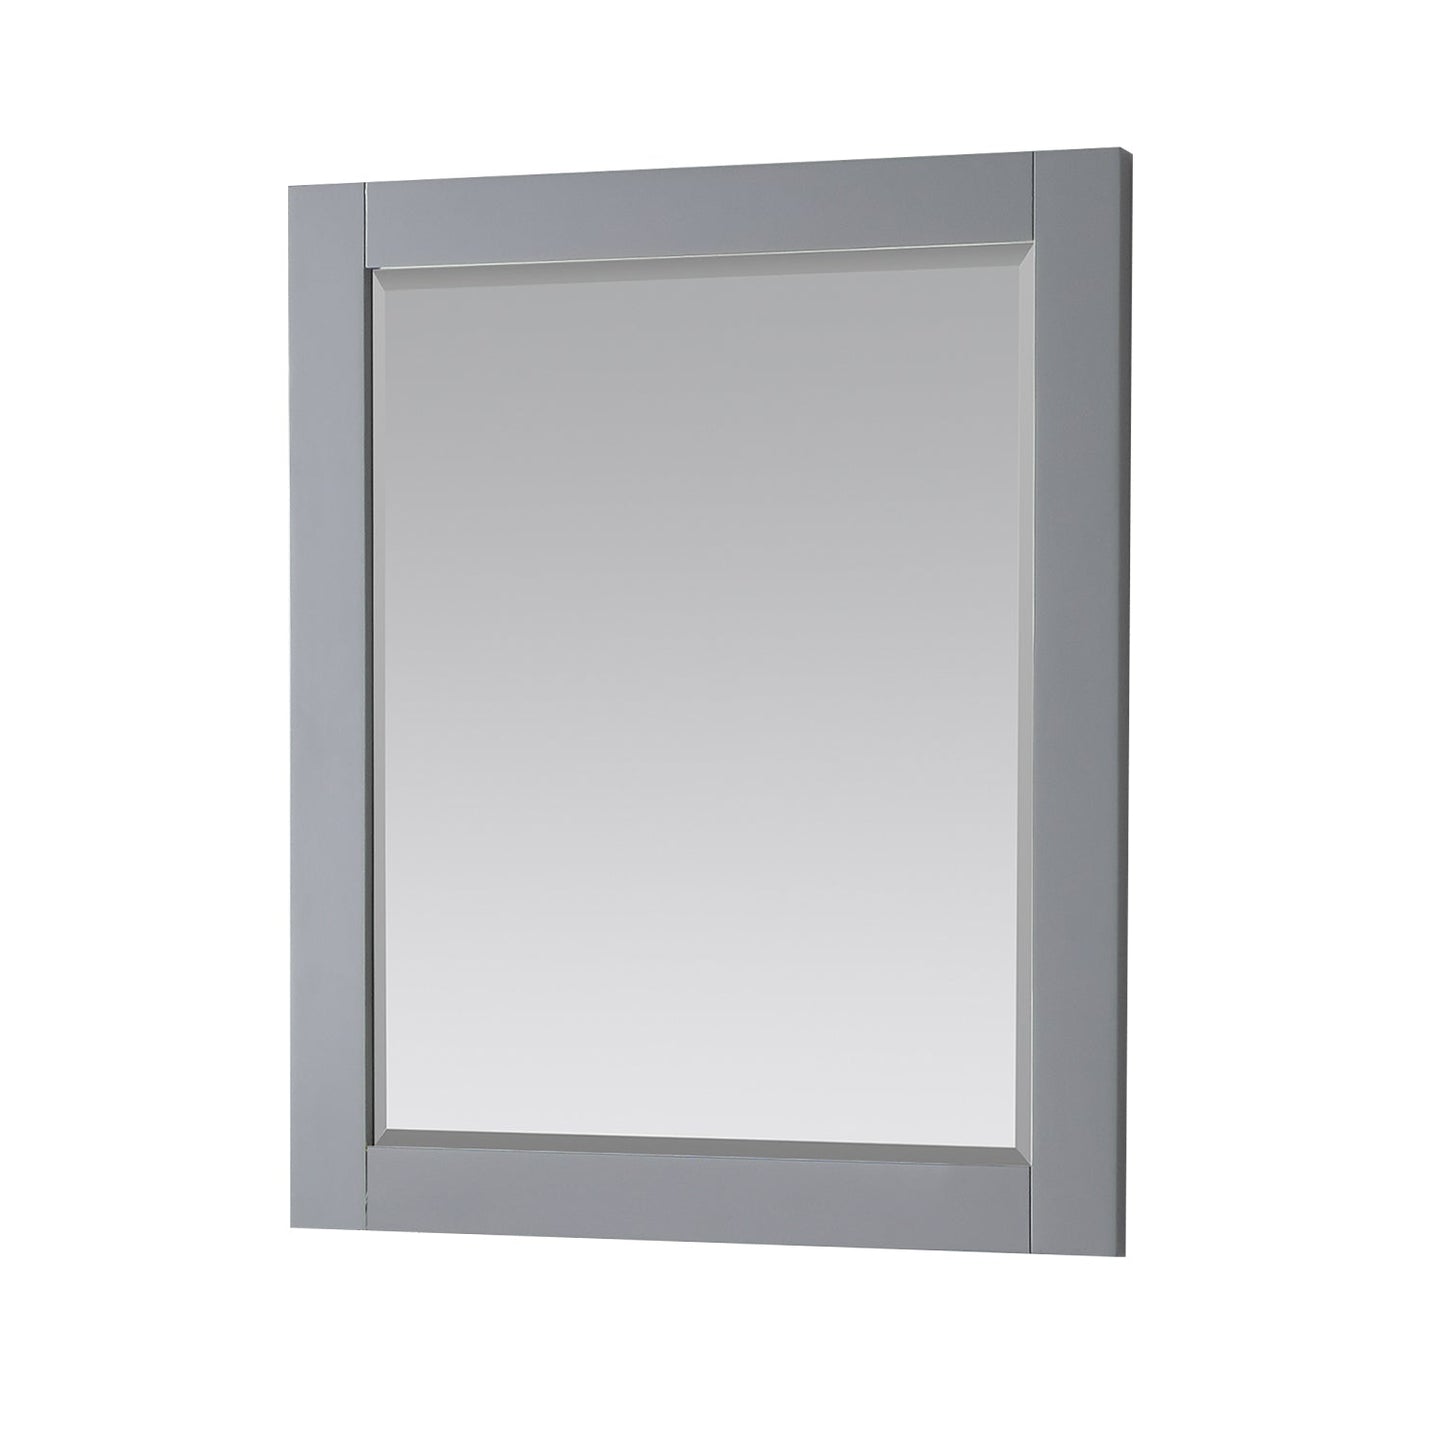 Maribella 28" Rectangular Bathroom Wood Framed Wall Mirror in Classic Gray